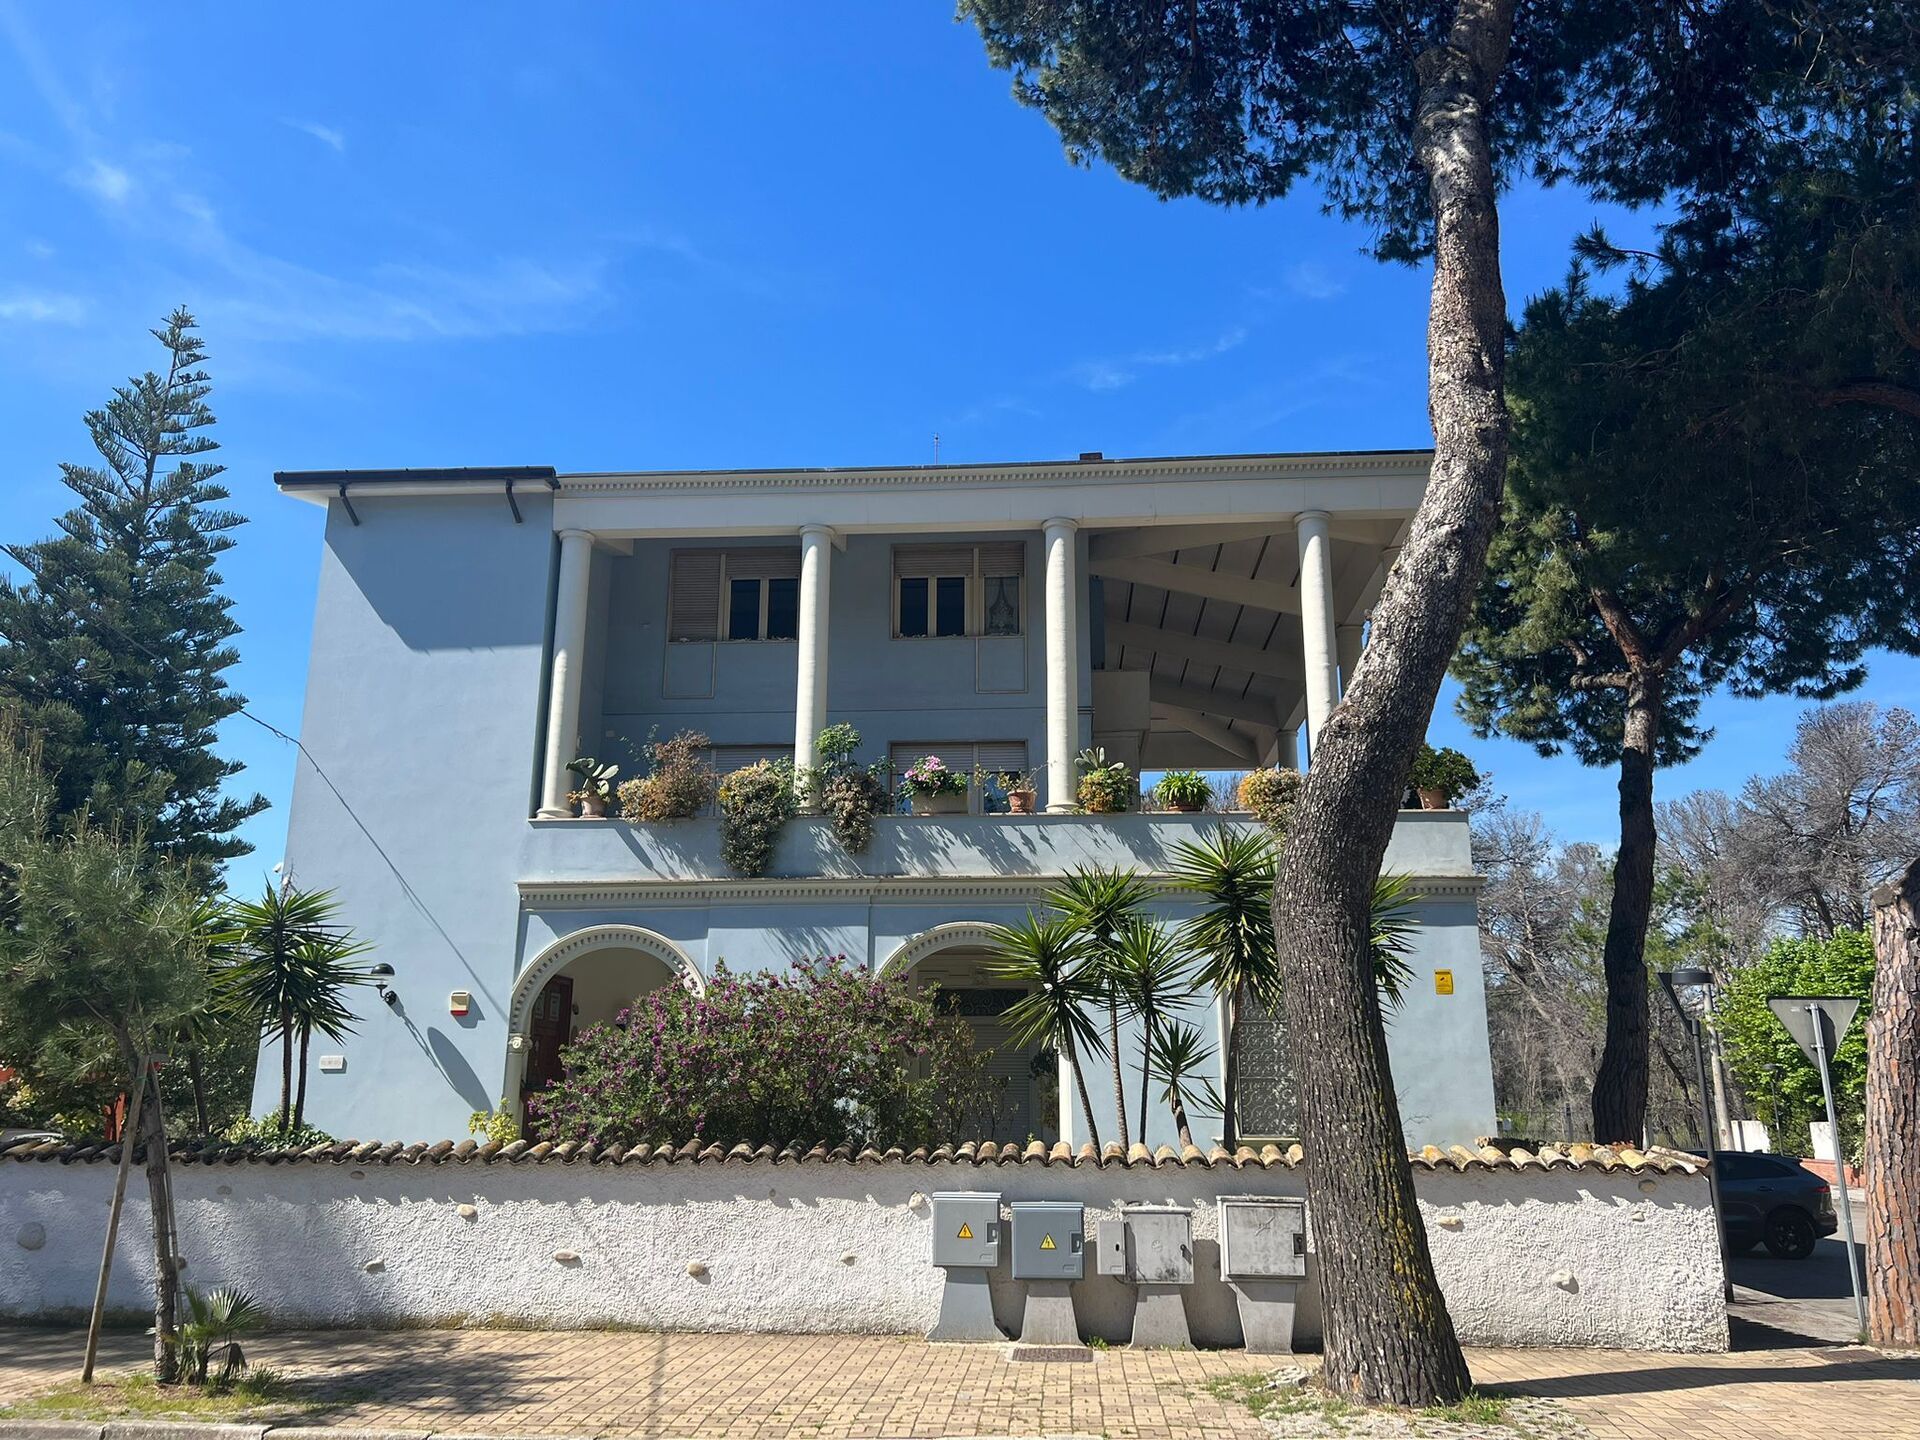 Vendita Villa Pescara Mare Abruzzo | luxforsale.it